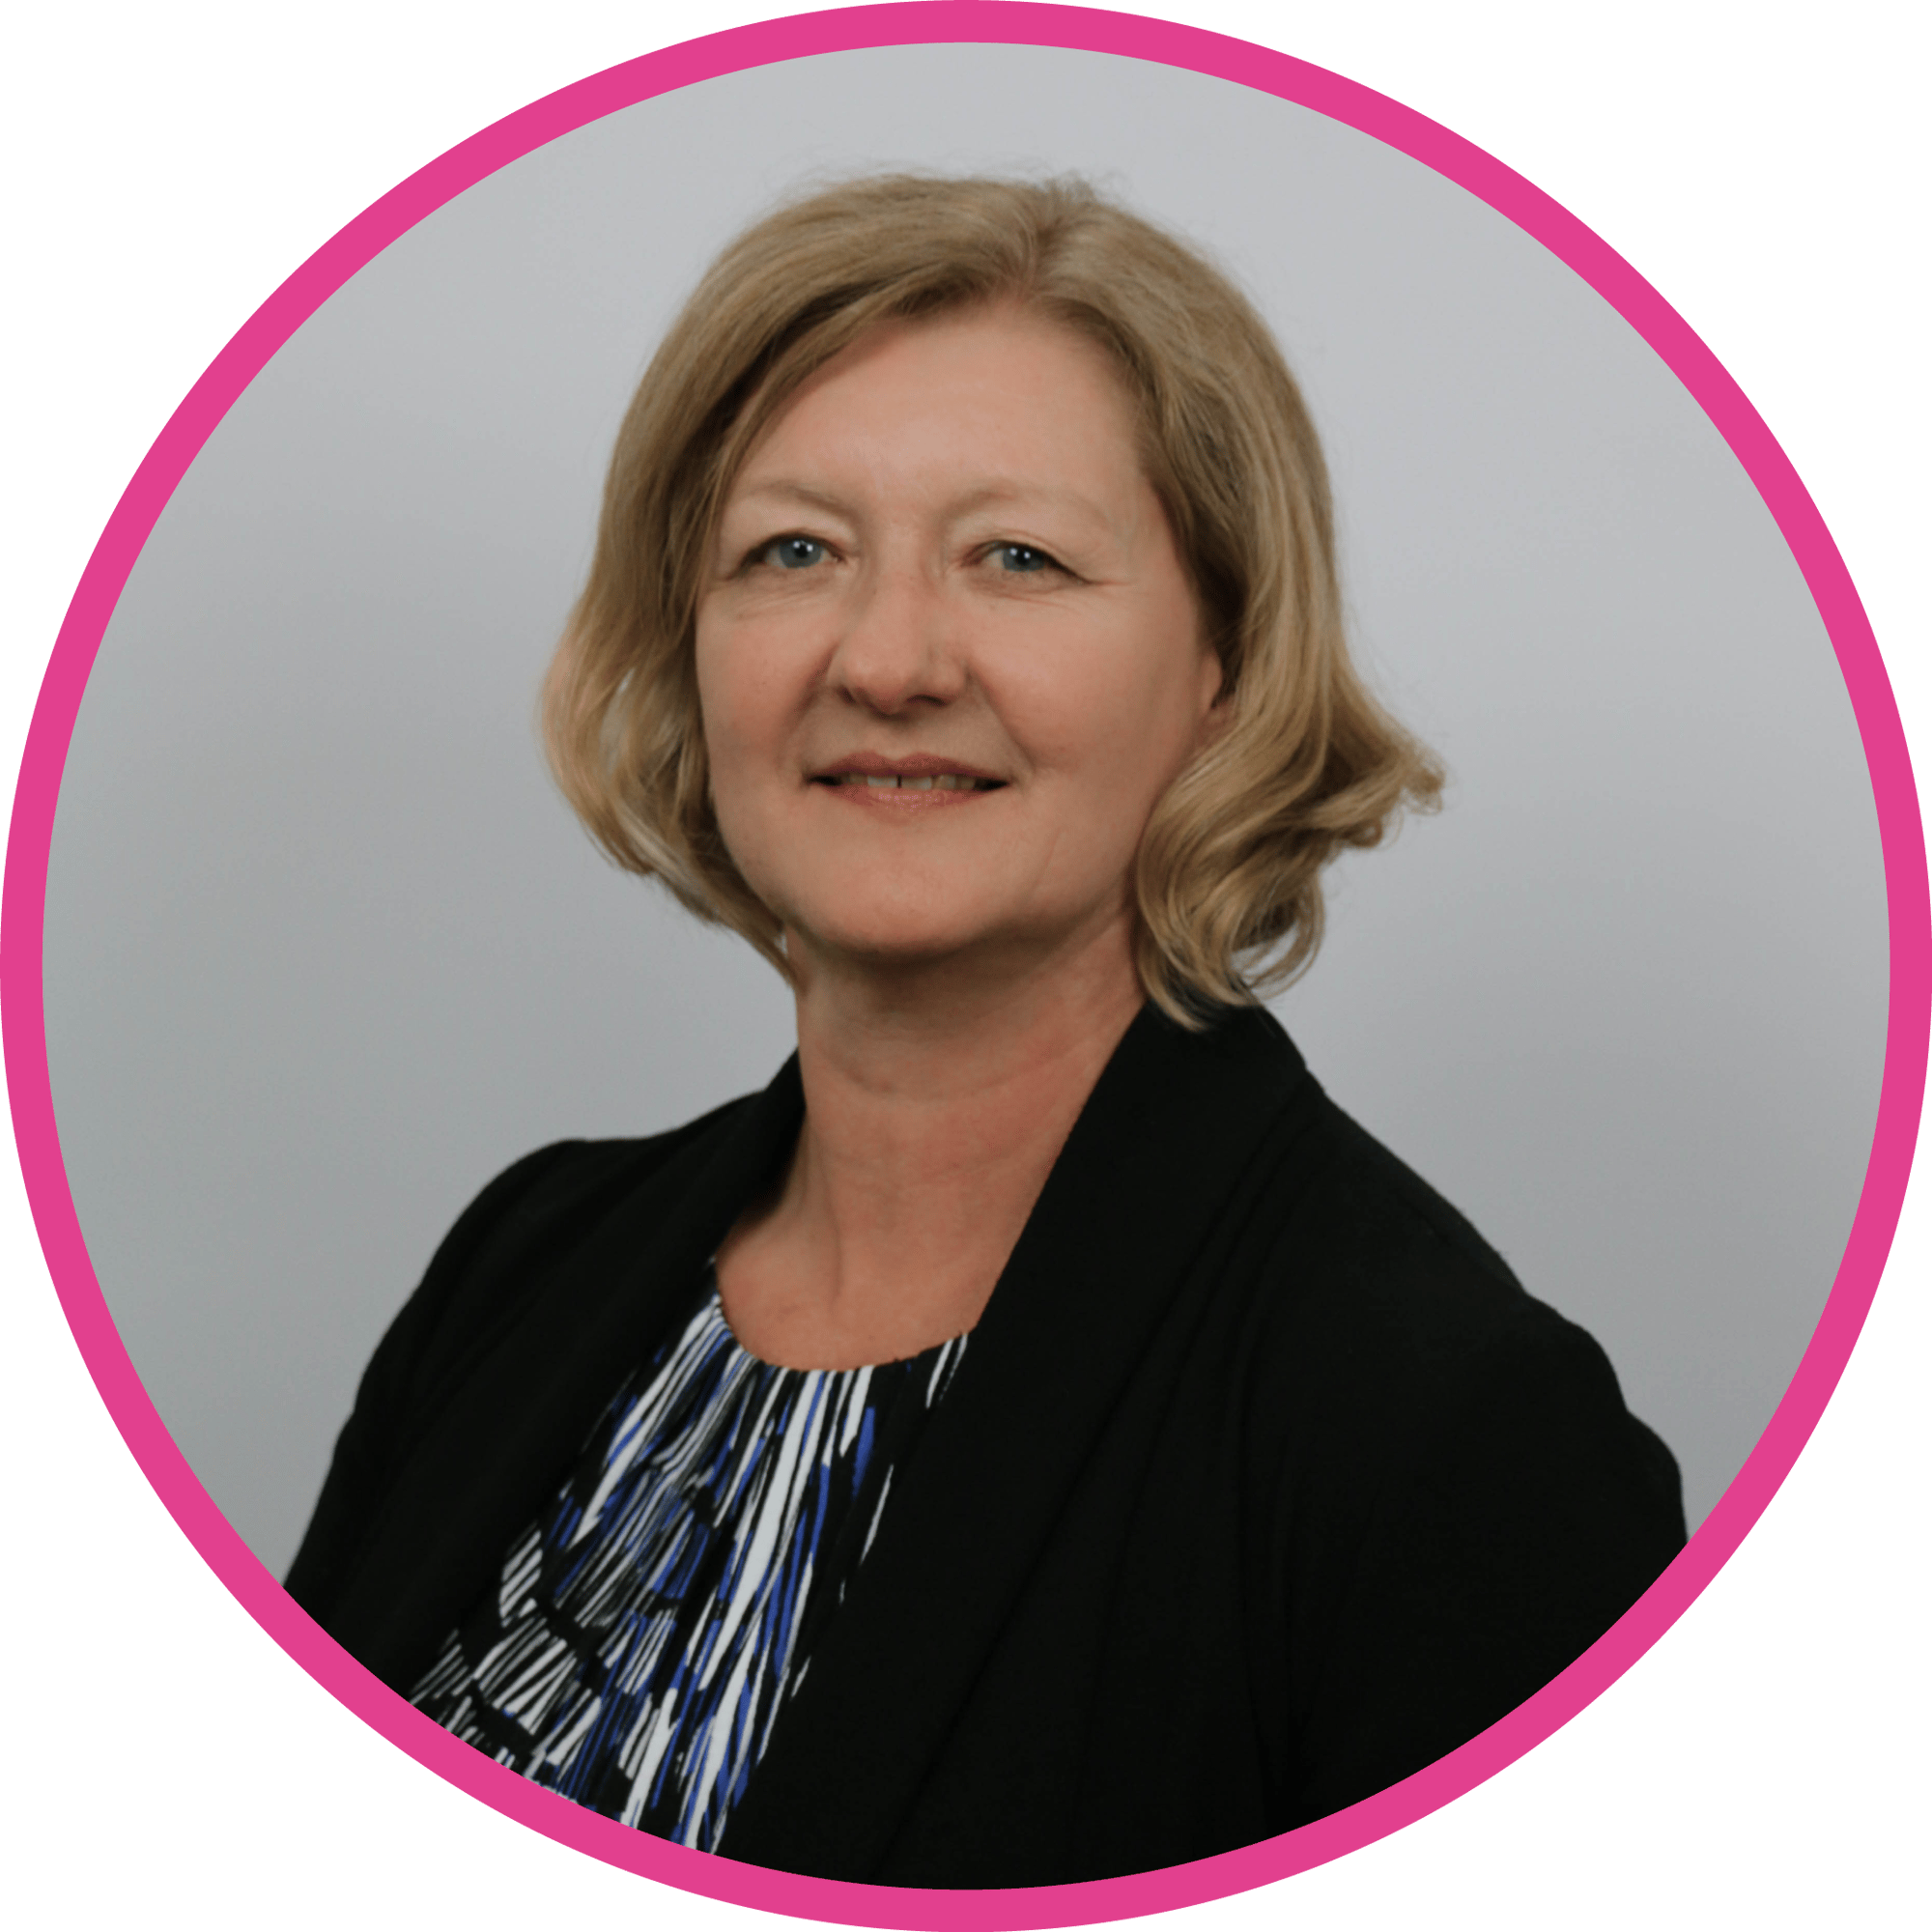 Professional Services Headshot Pink Circle - Joylene Leaney